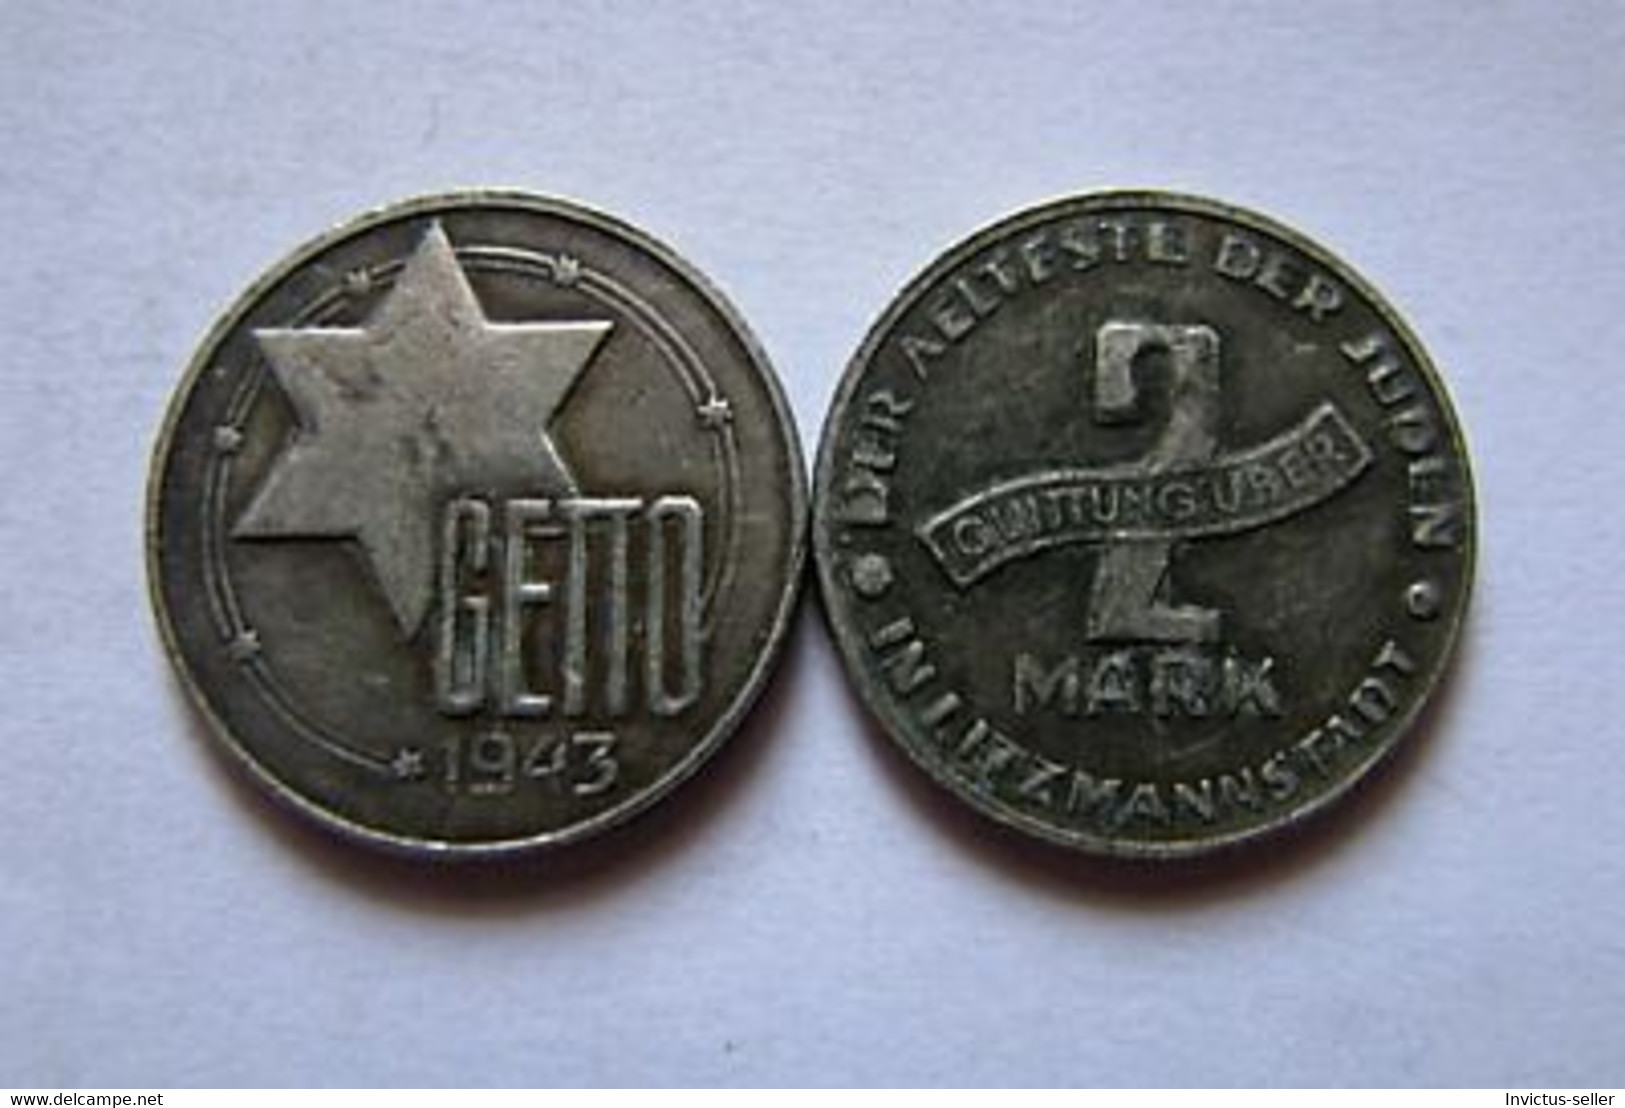 GETTO 2 MARK 1943 LITZMANNSTADT GERMAN COIN MONETA GHETTO EBREI JUDE JUIFE Auschwitz JUDE EBREI GERMANY - Collezioni